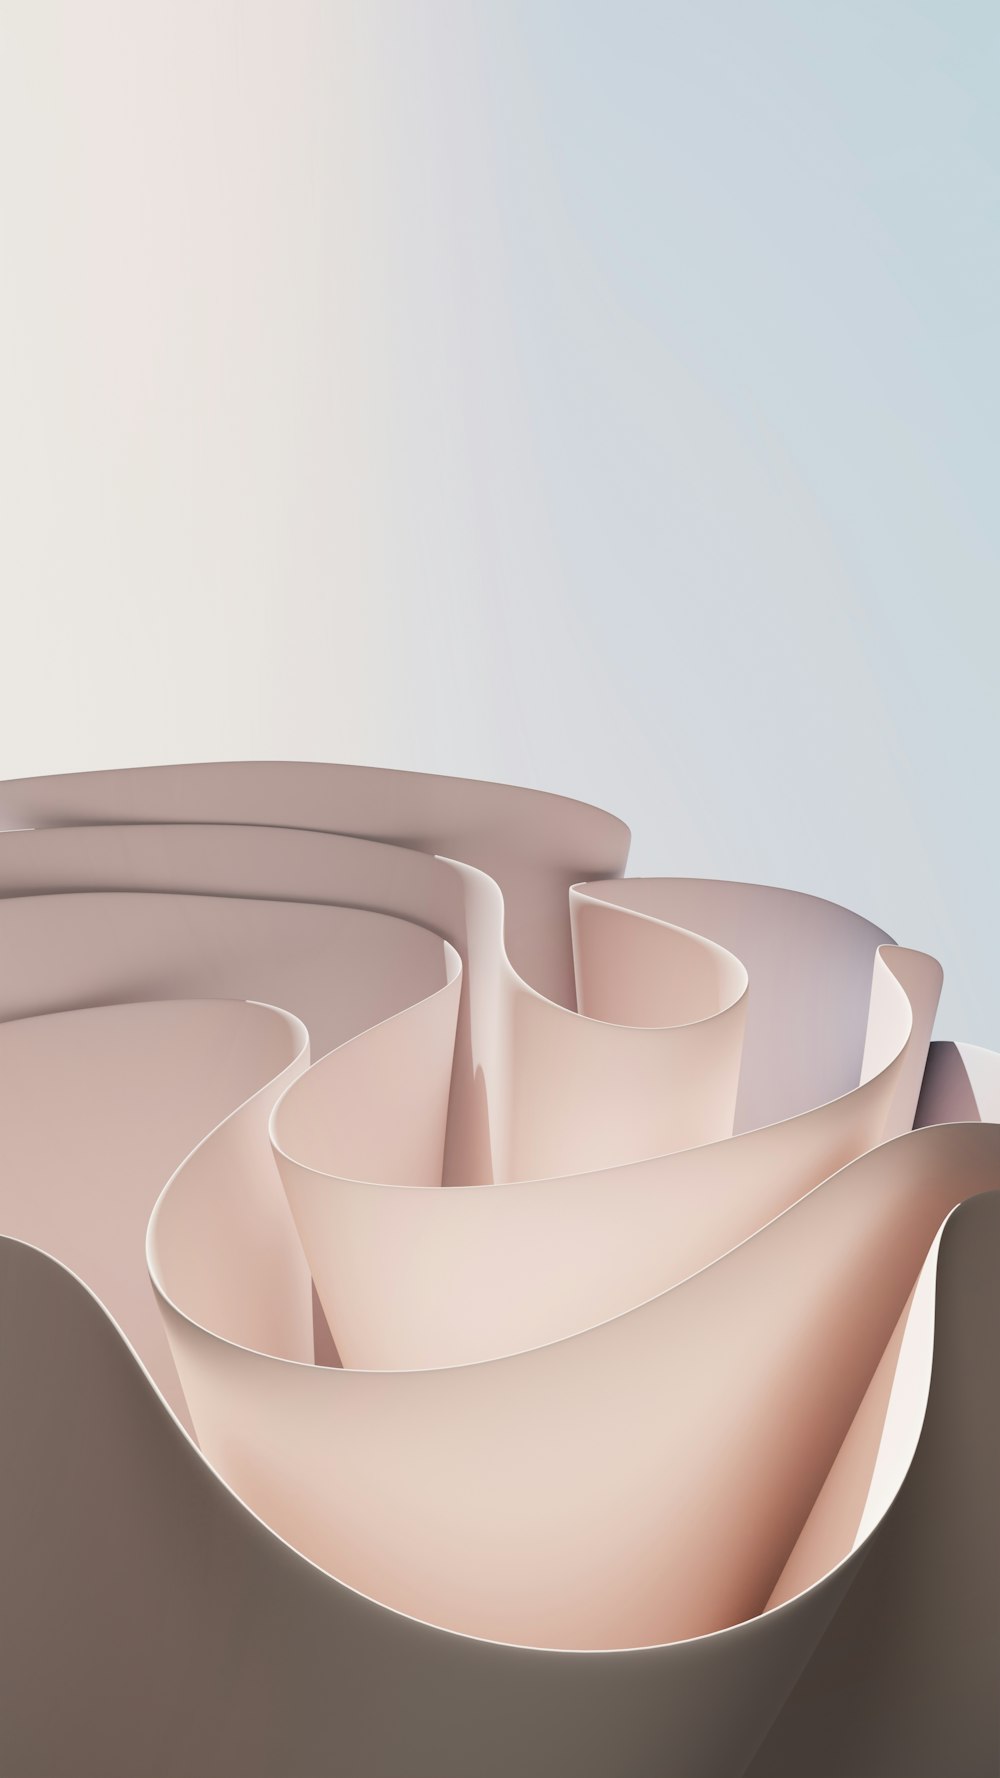 Una imagen generada por computadora de una superficie curva